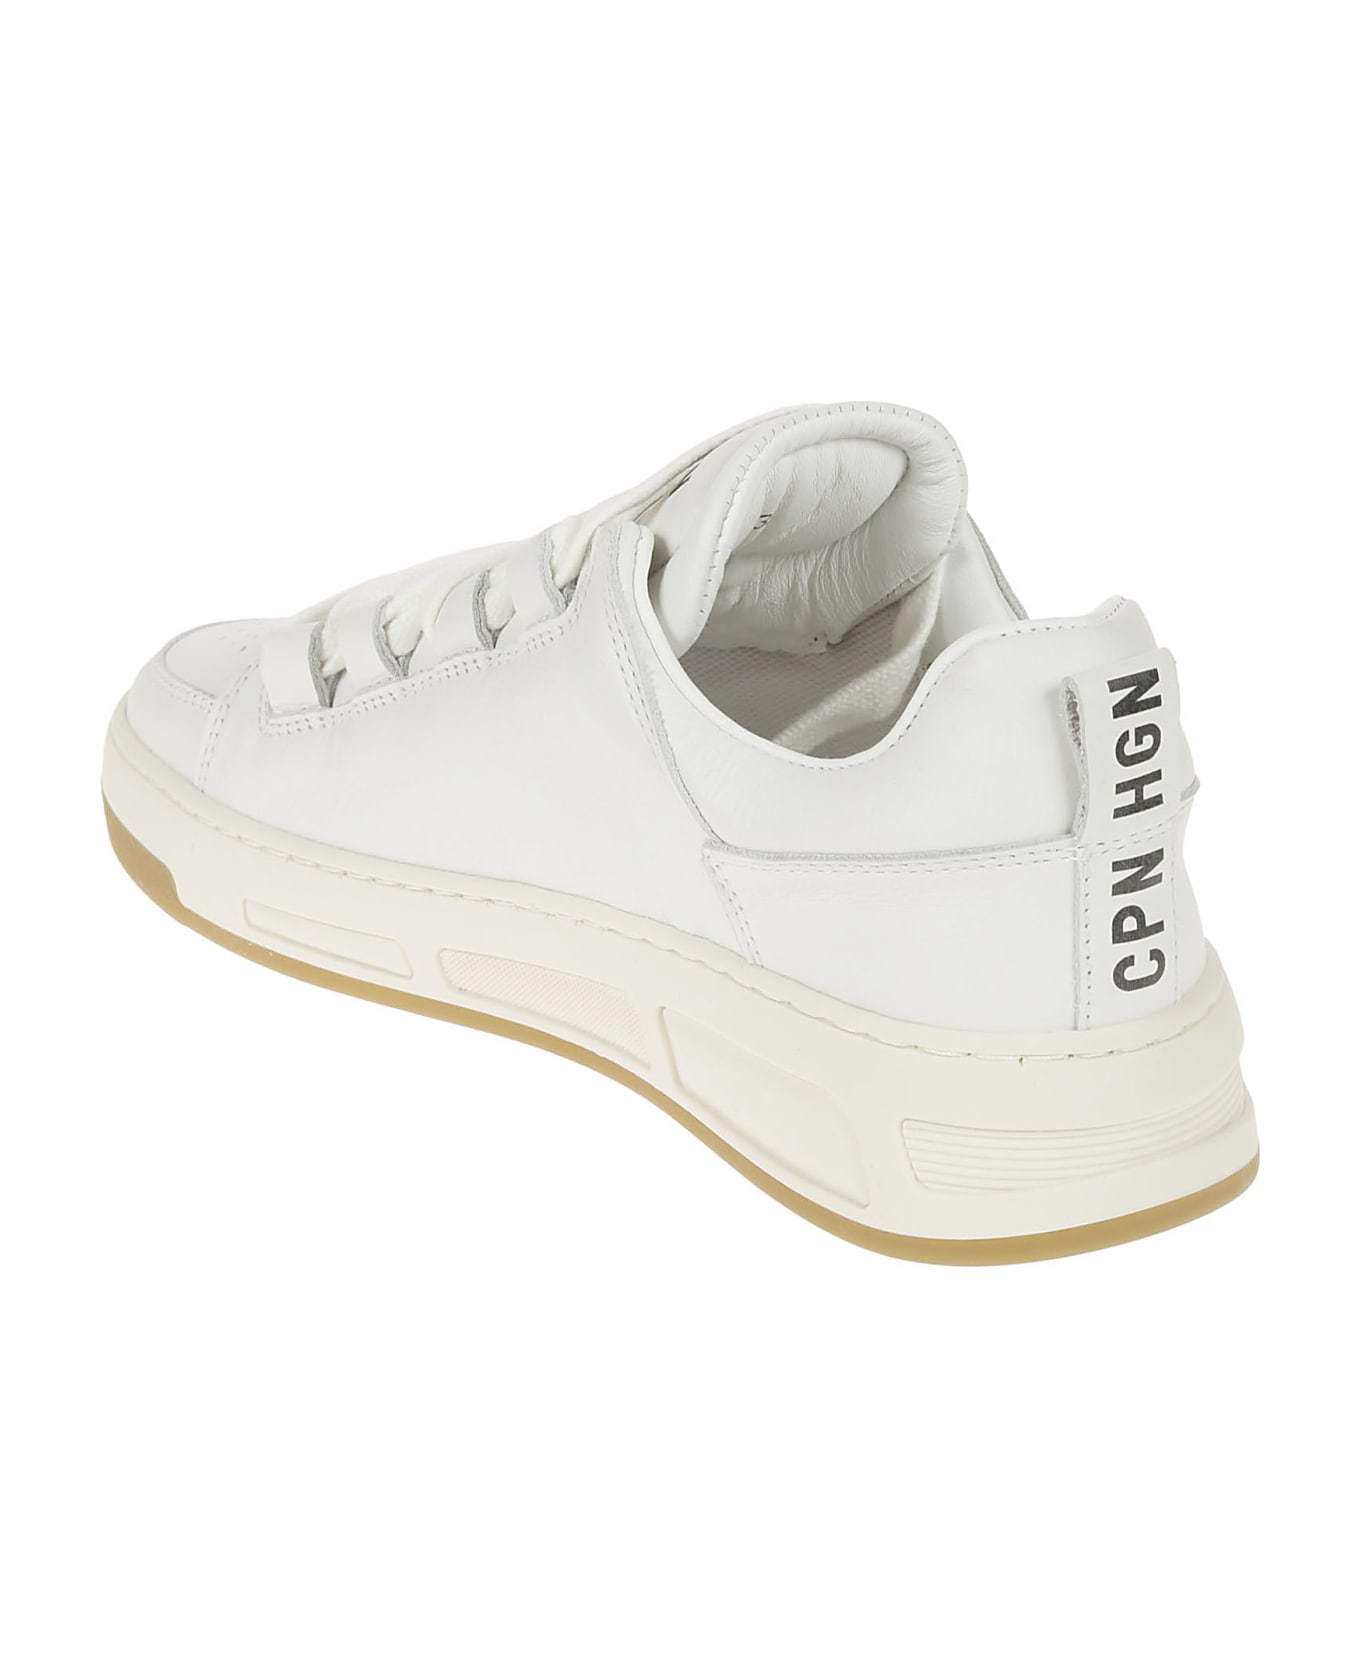 Copenhagen Leather Sneaker - White スニーカー